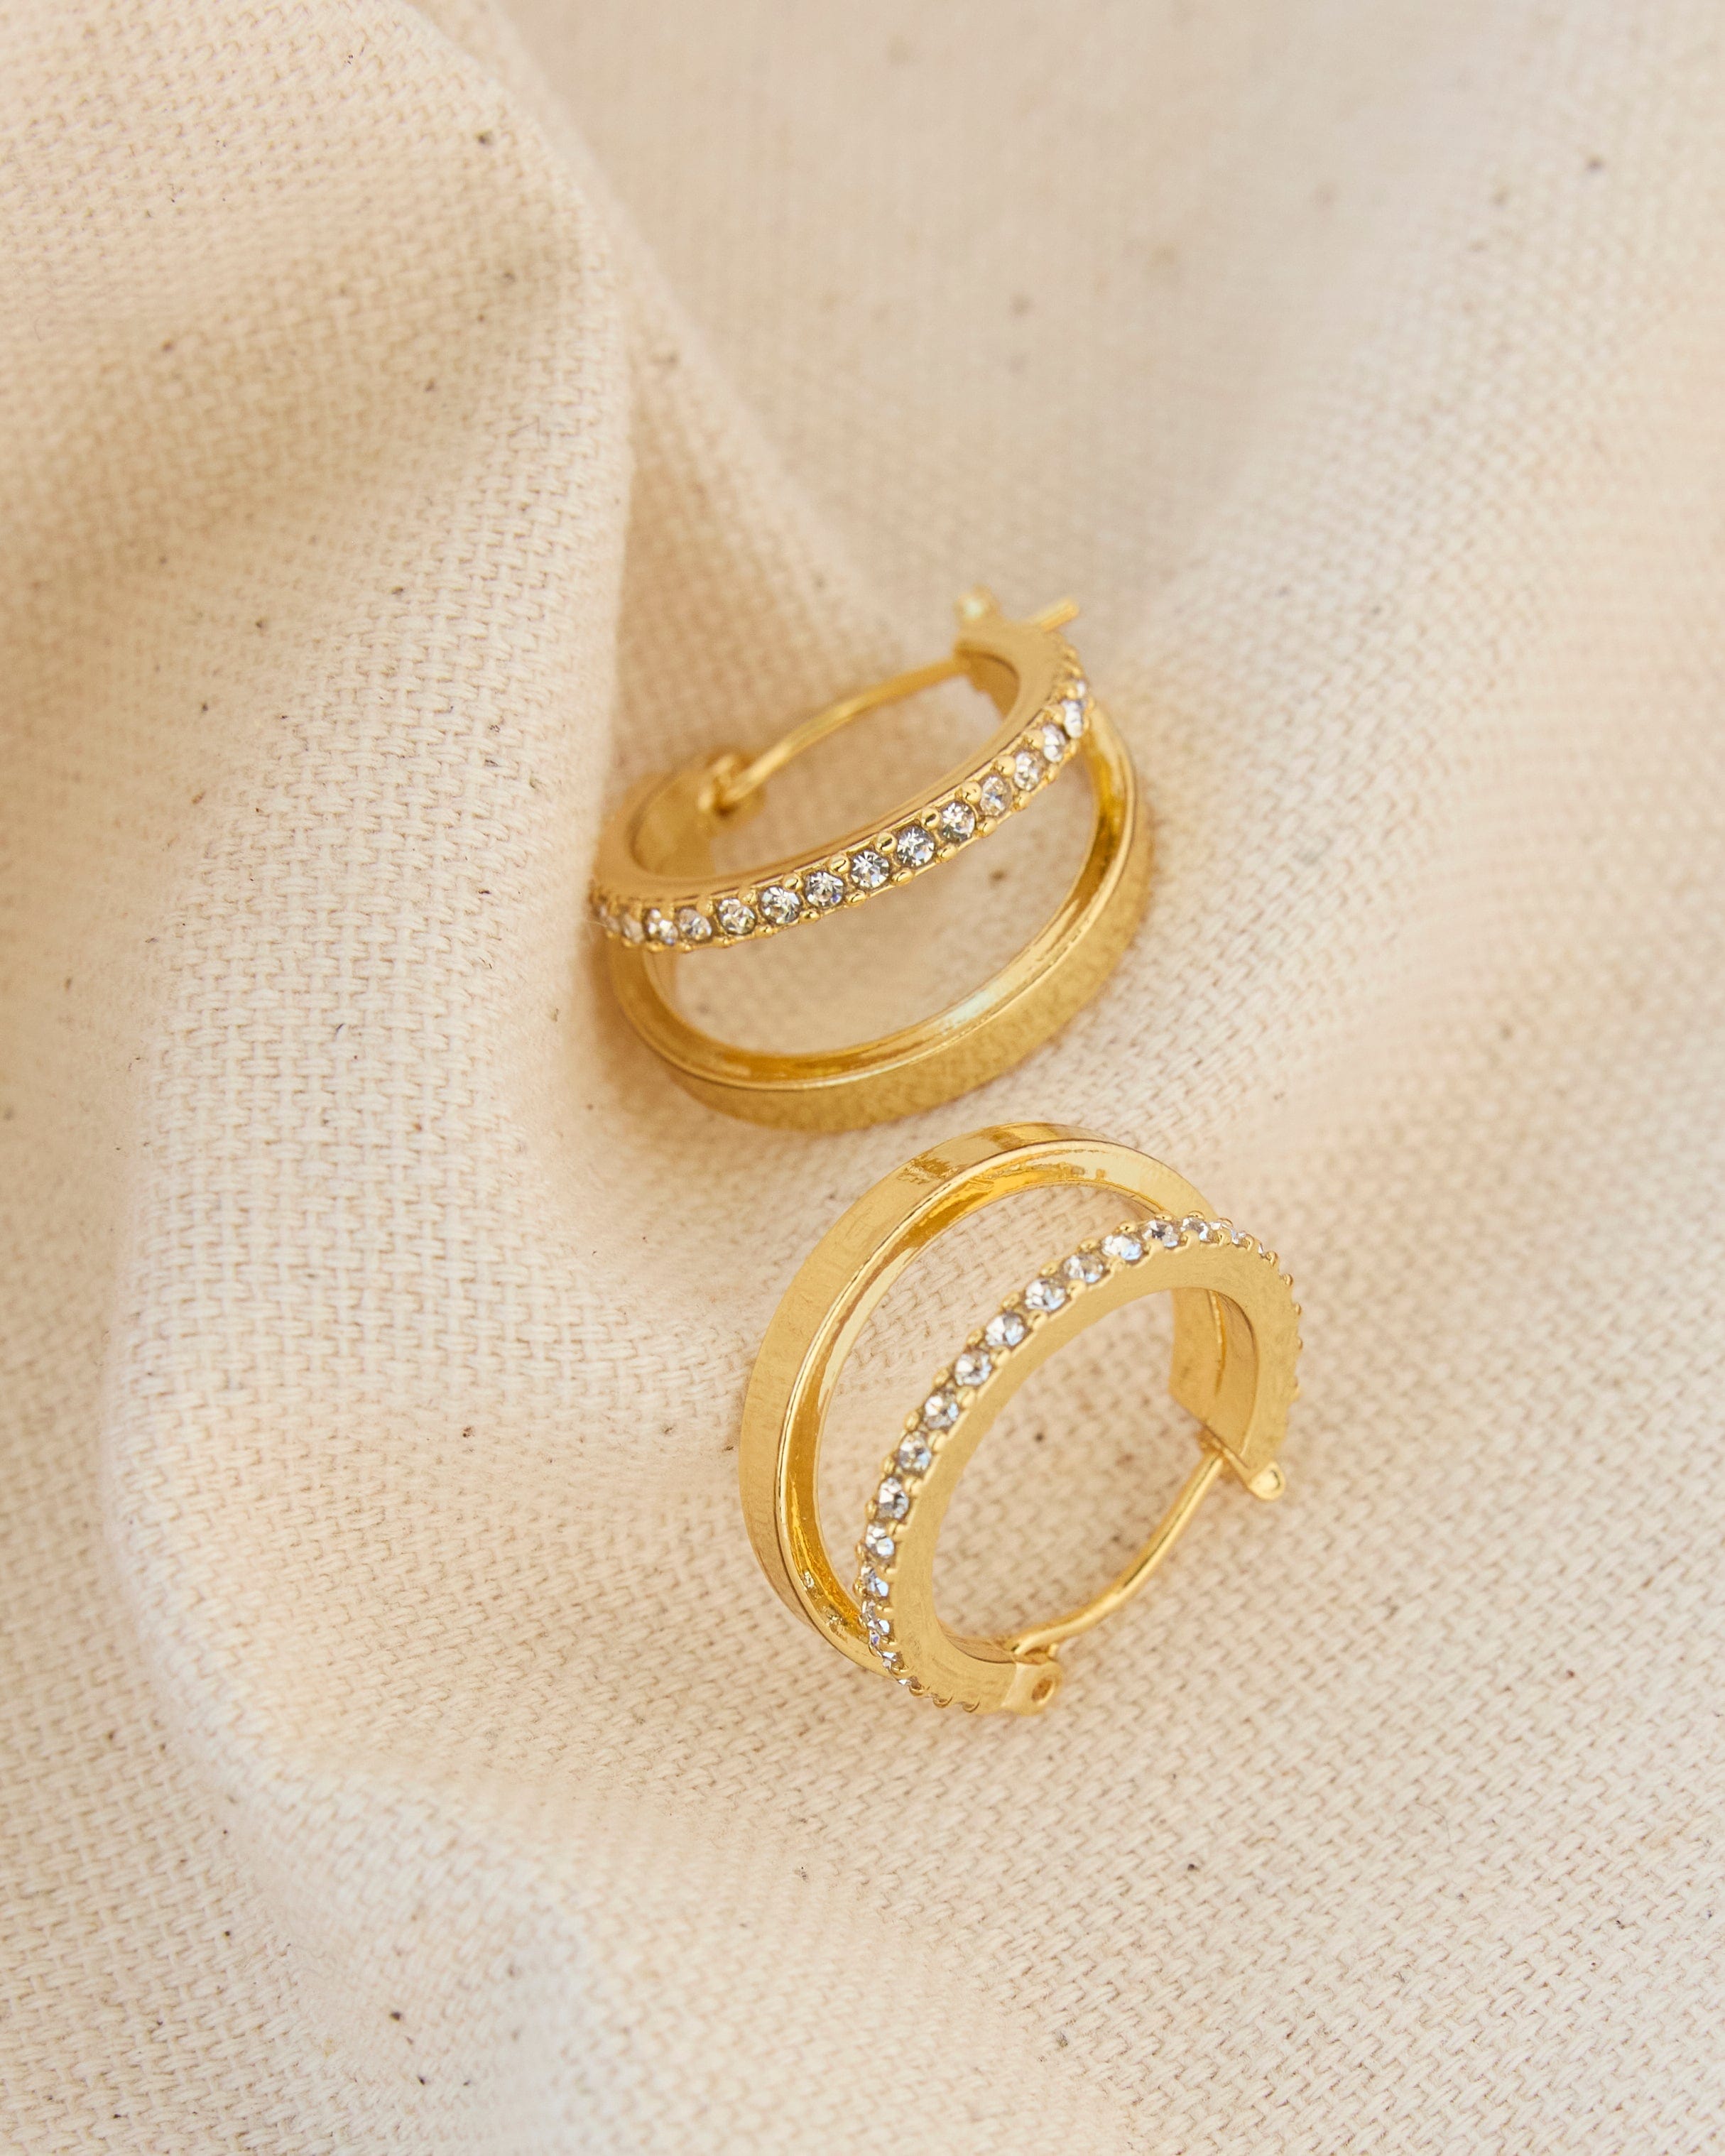 Gold huggie hoop earrings with glass stones.